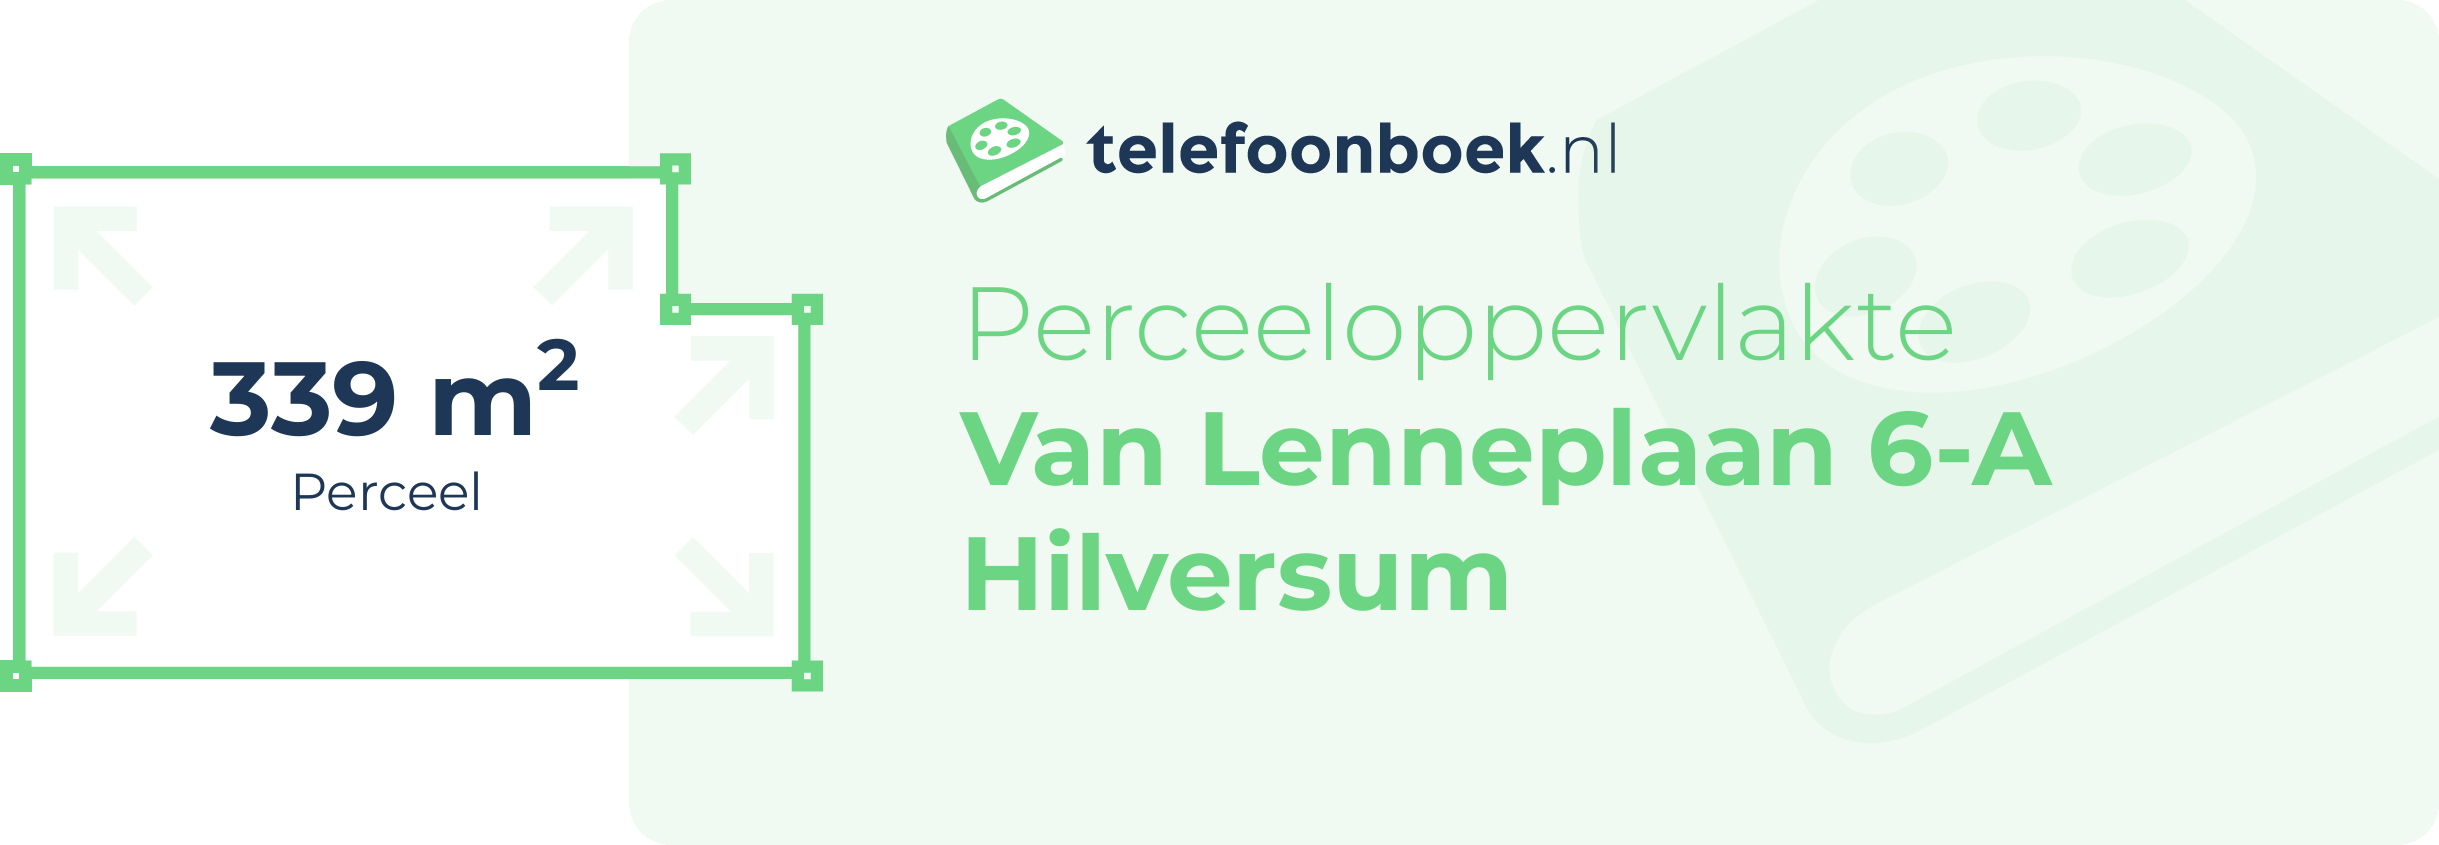 Perceeloppervlakte Van Lenneplaan 6-A Hilversum